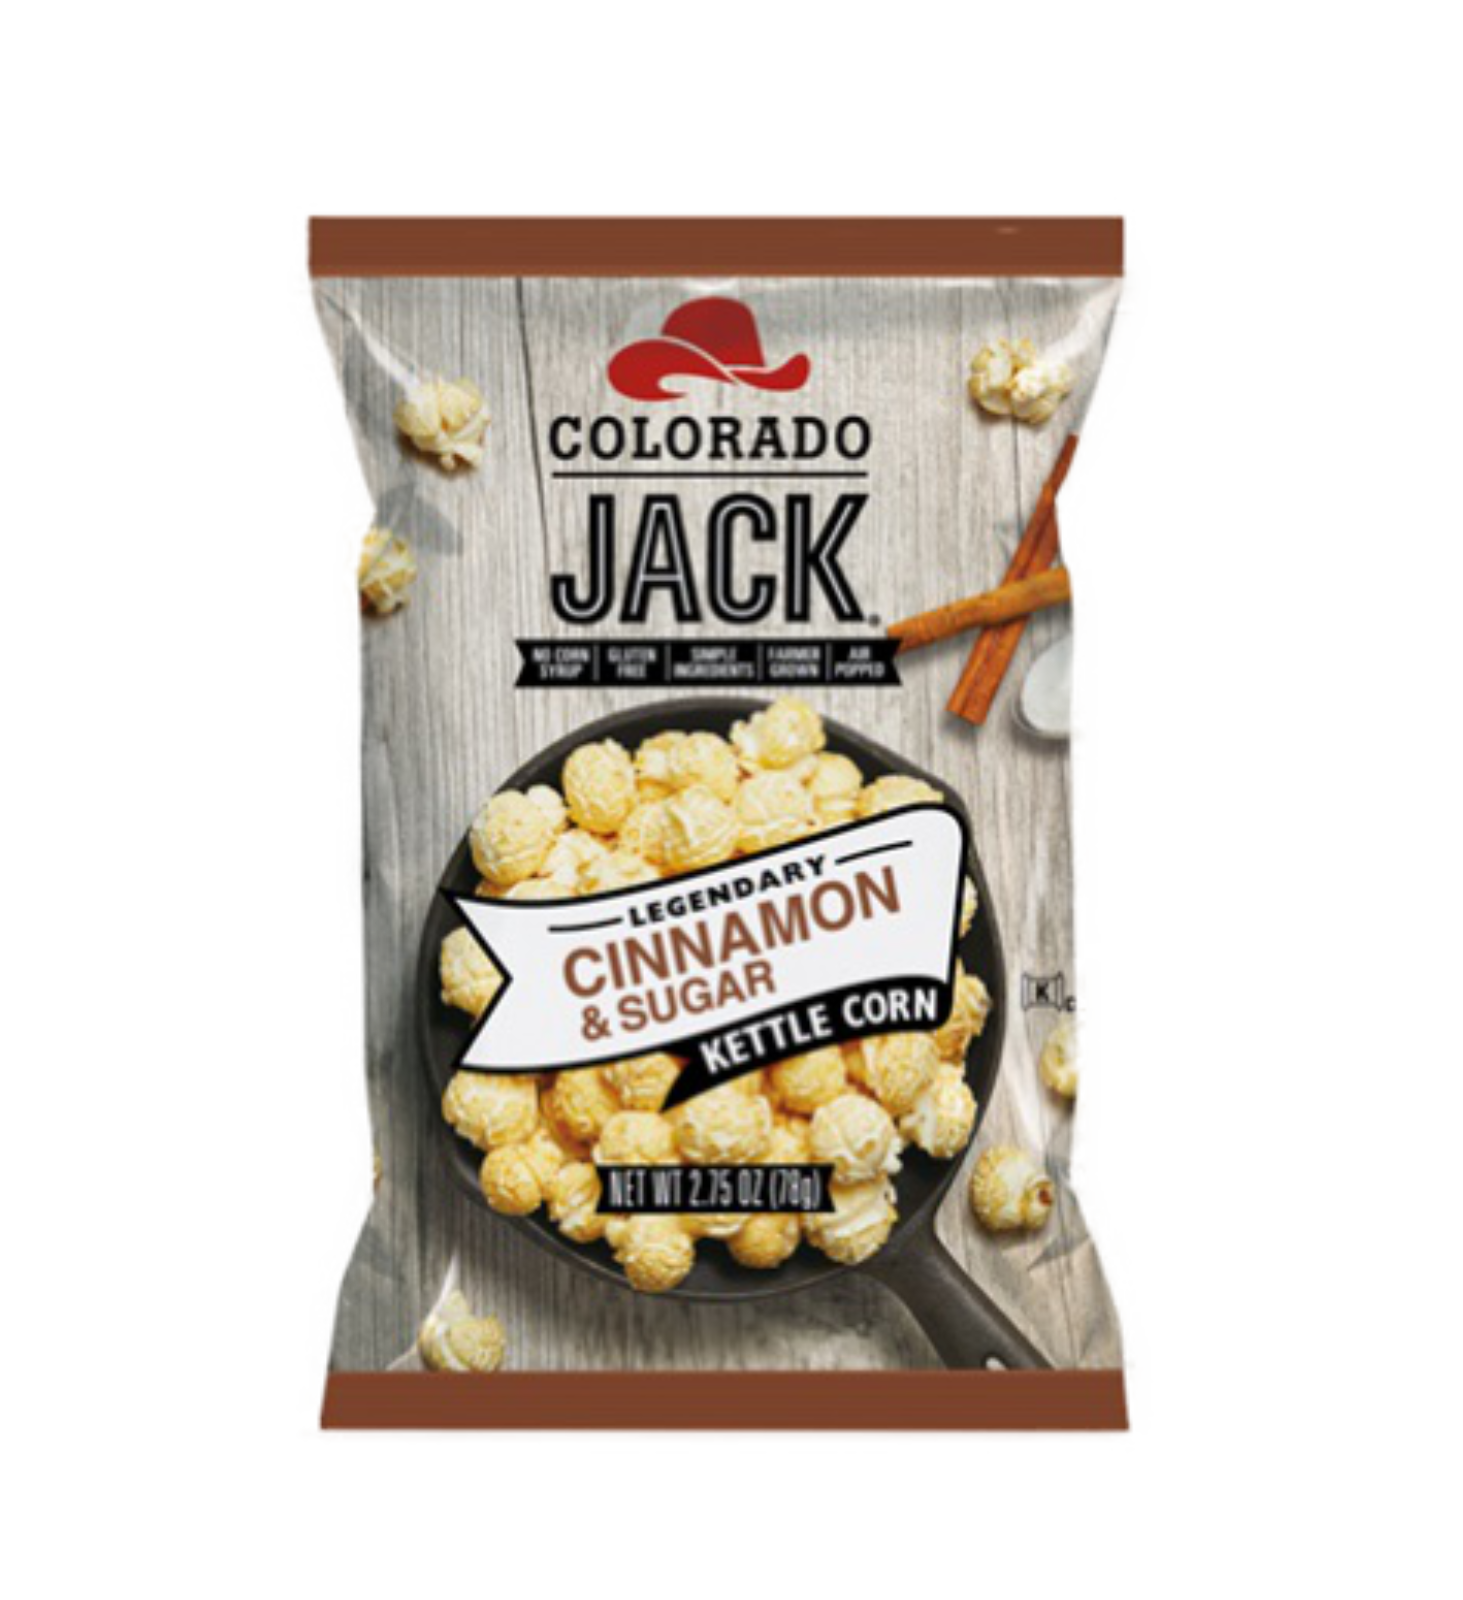 Colorado Jack Cinnamon & Sugar USA Popcorn 2.75oz - 6 Count *07/08/24 DATED*